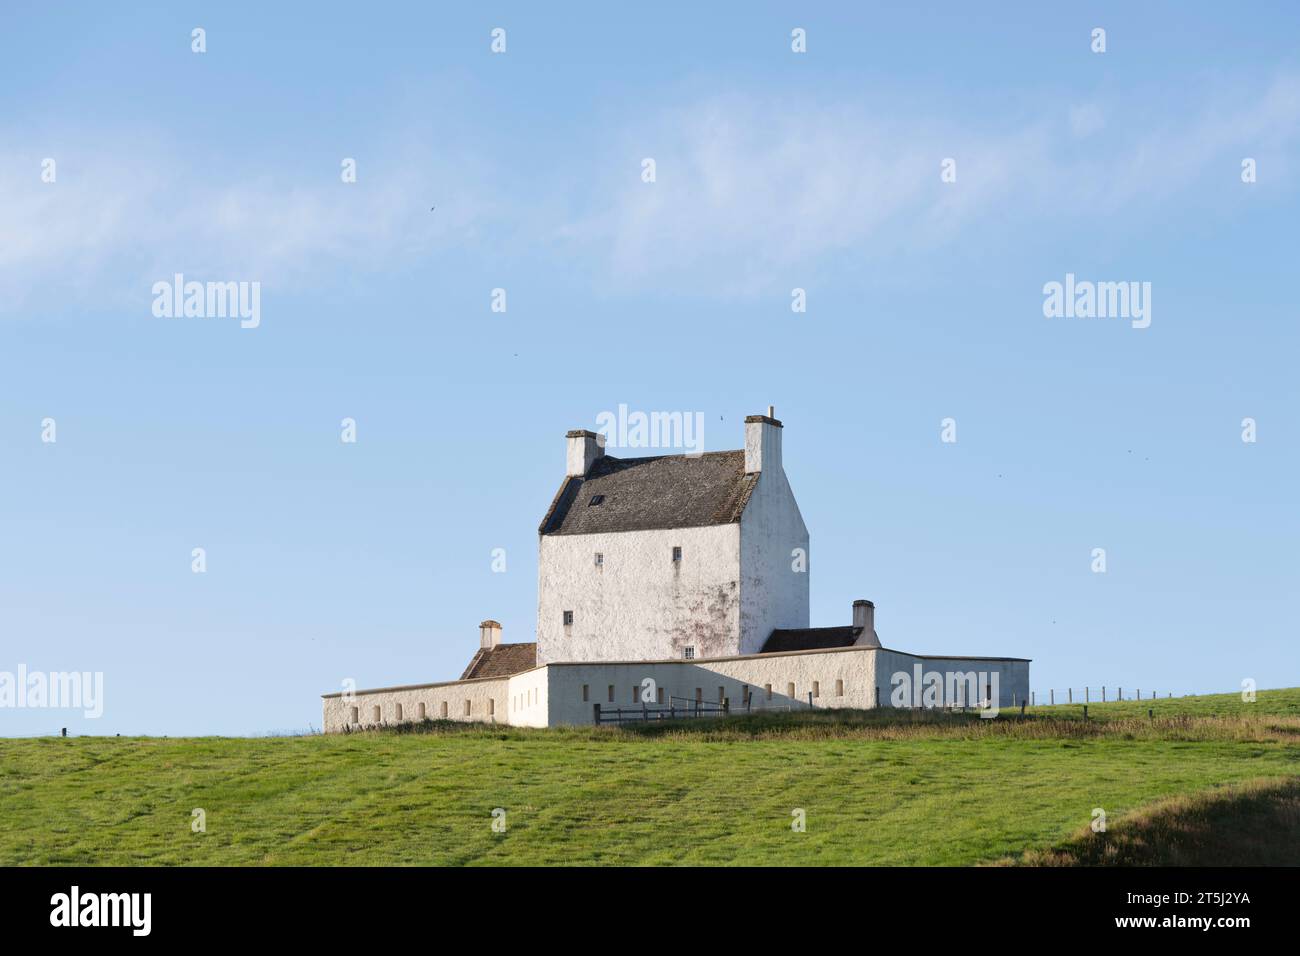 Corgarff Castle, la tour médiévale blanchie à la chaux sur une colline isolée dans les Highlands écossais, face à un ciel bleu à la fin de l'été Banque D'Images